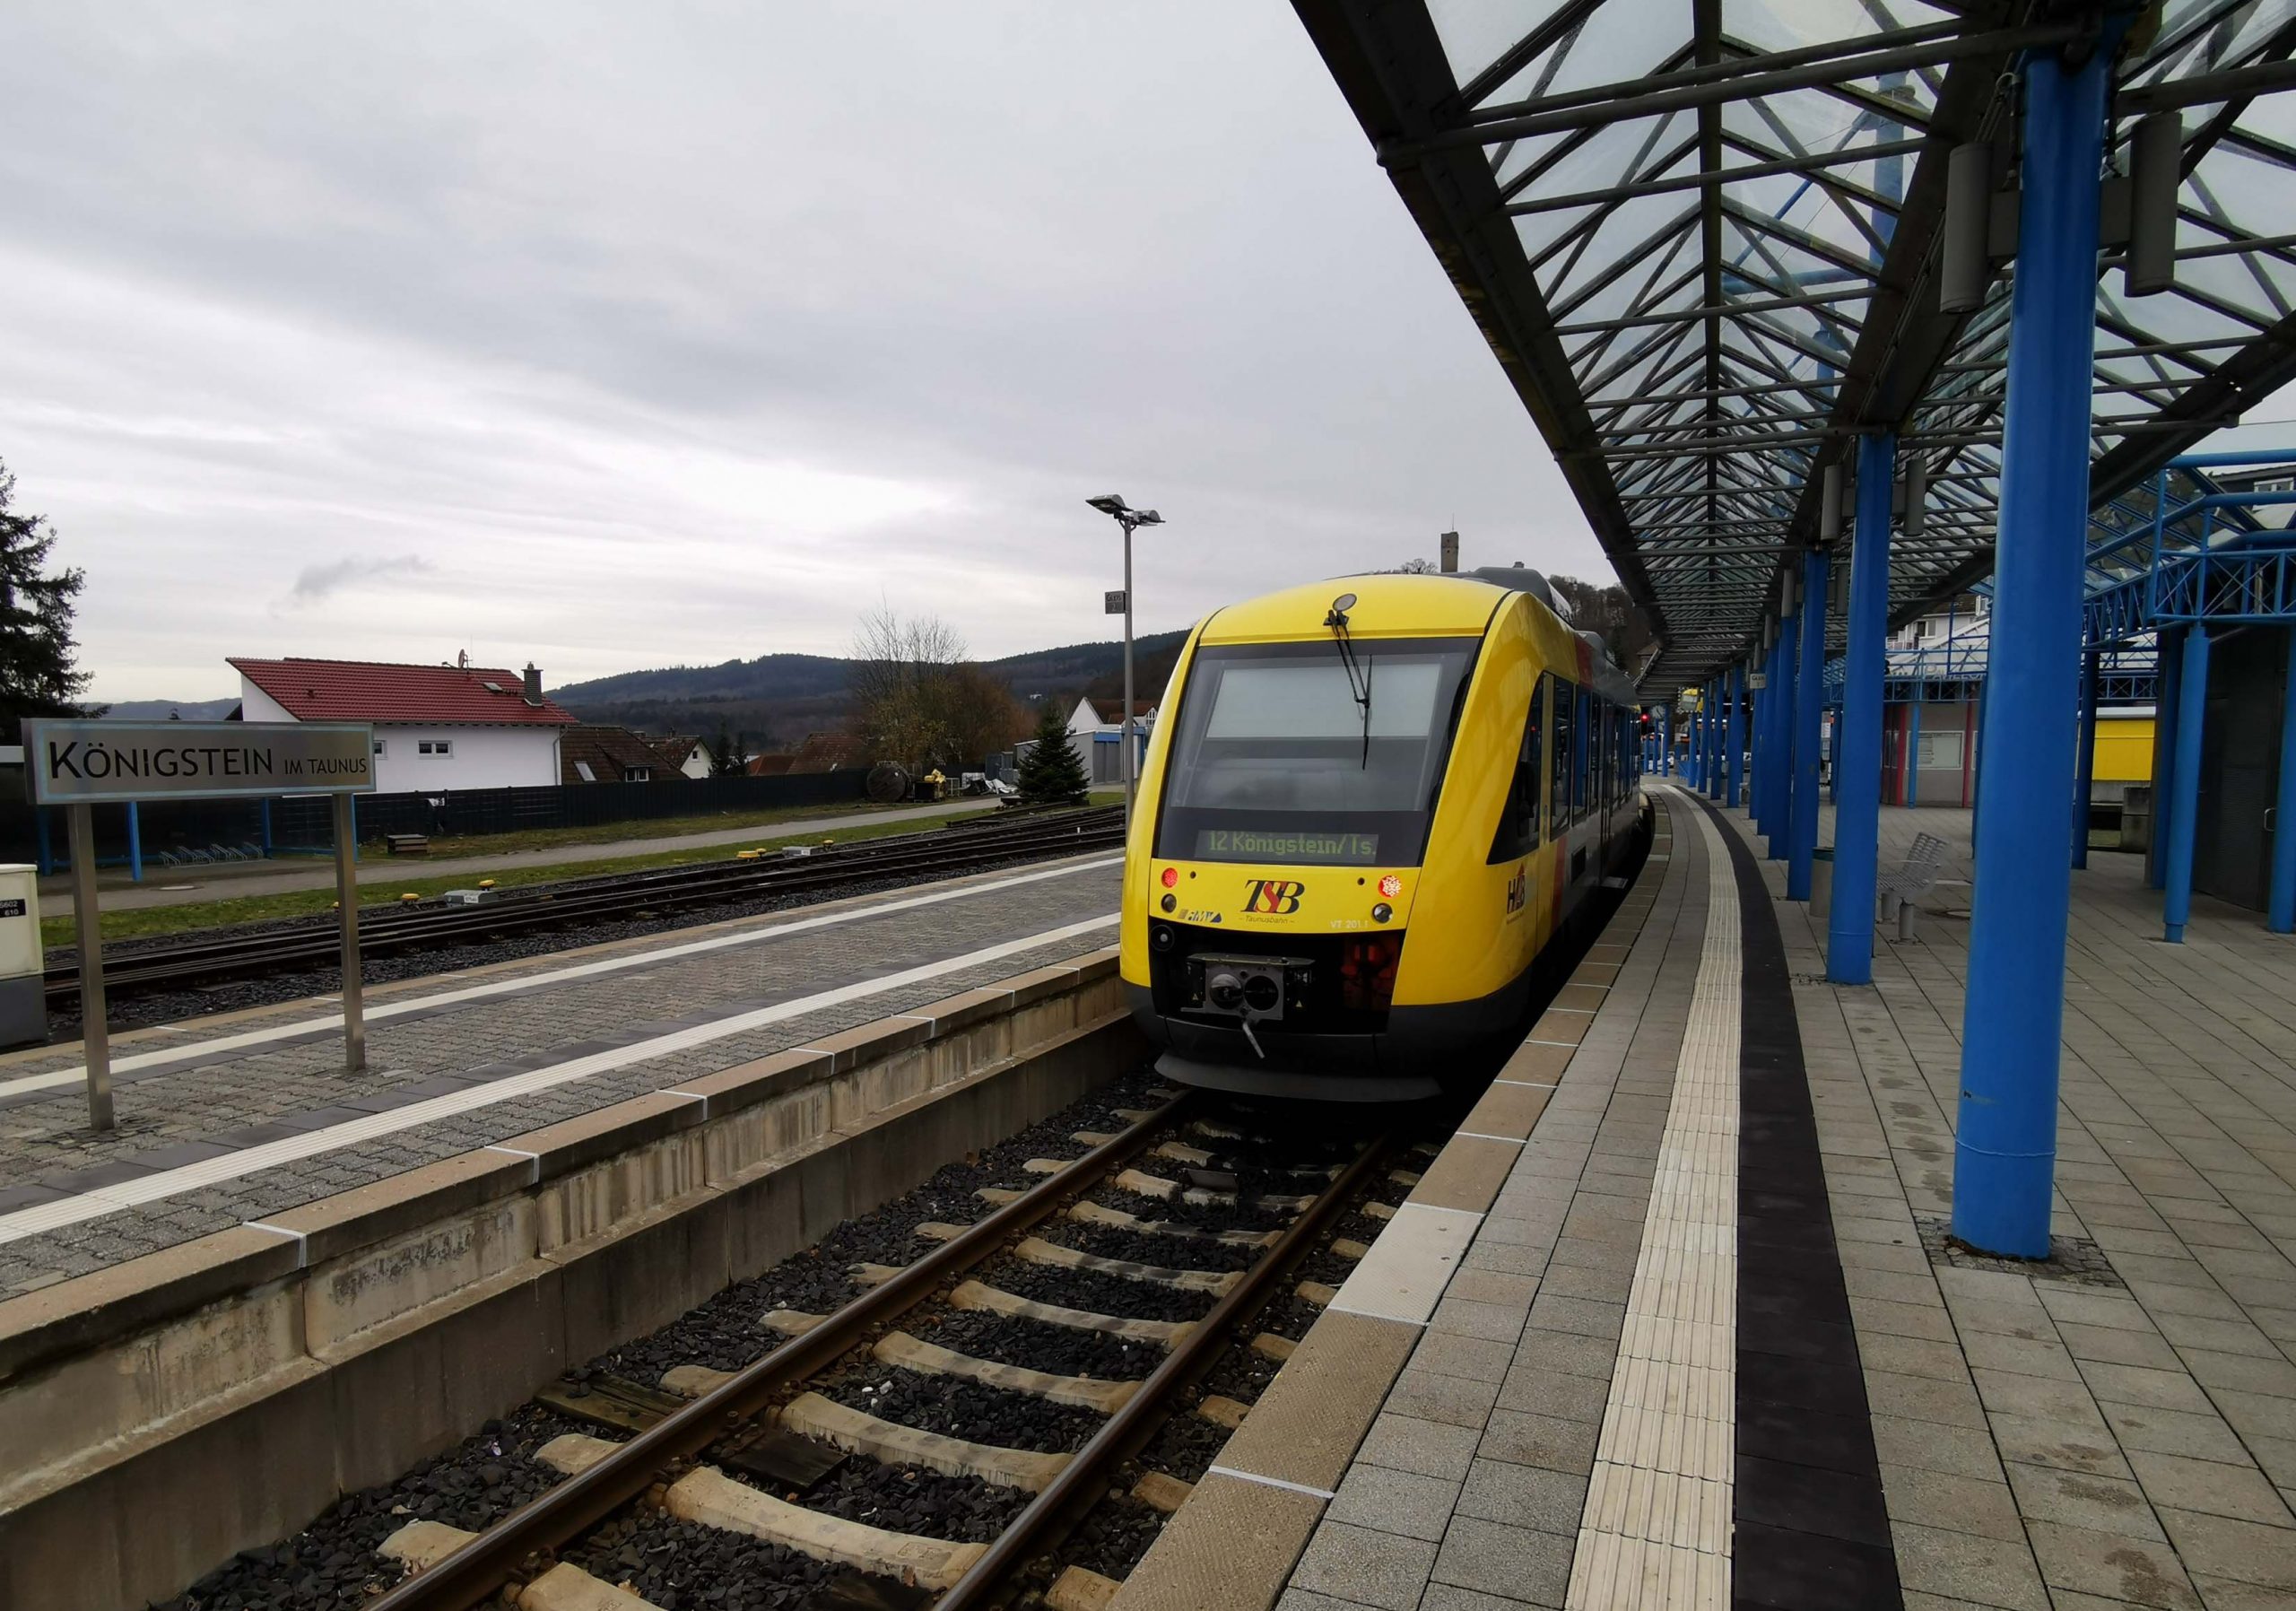 Read more about the article Königstein: Busse statt Bahn – Fahrradmitnahme nicht möglich